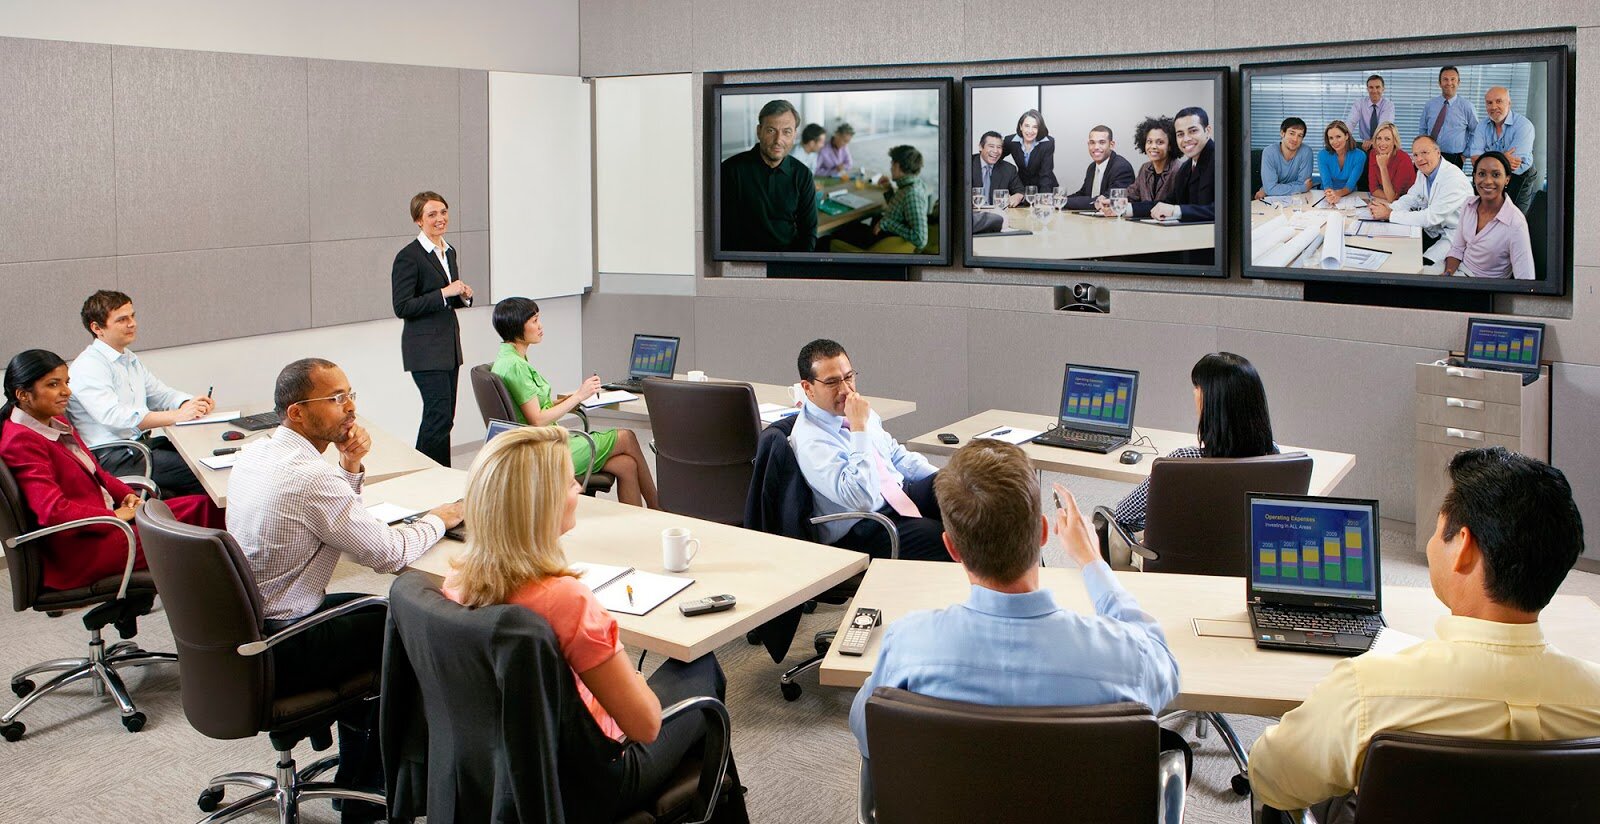 Video Conference sẽ hoạt động thông qua các quá trình như là nén dữ liệu, truyền dữ liệu được diễn ra trong thời gian rất ngắn